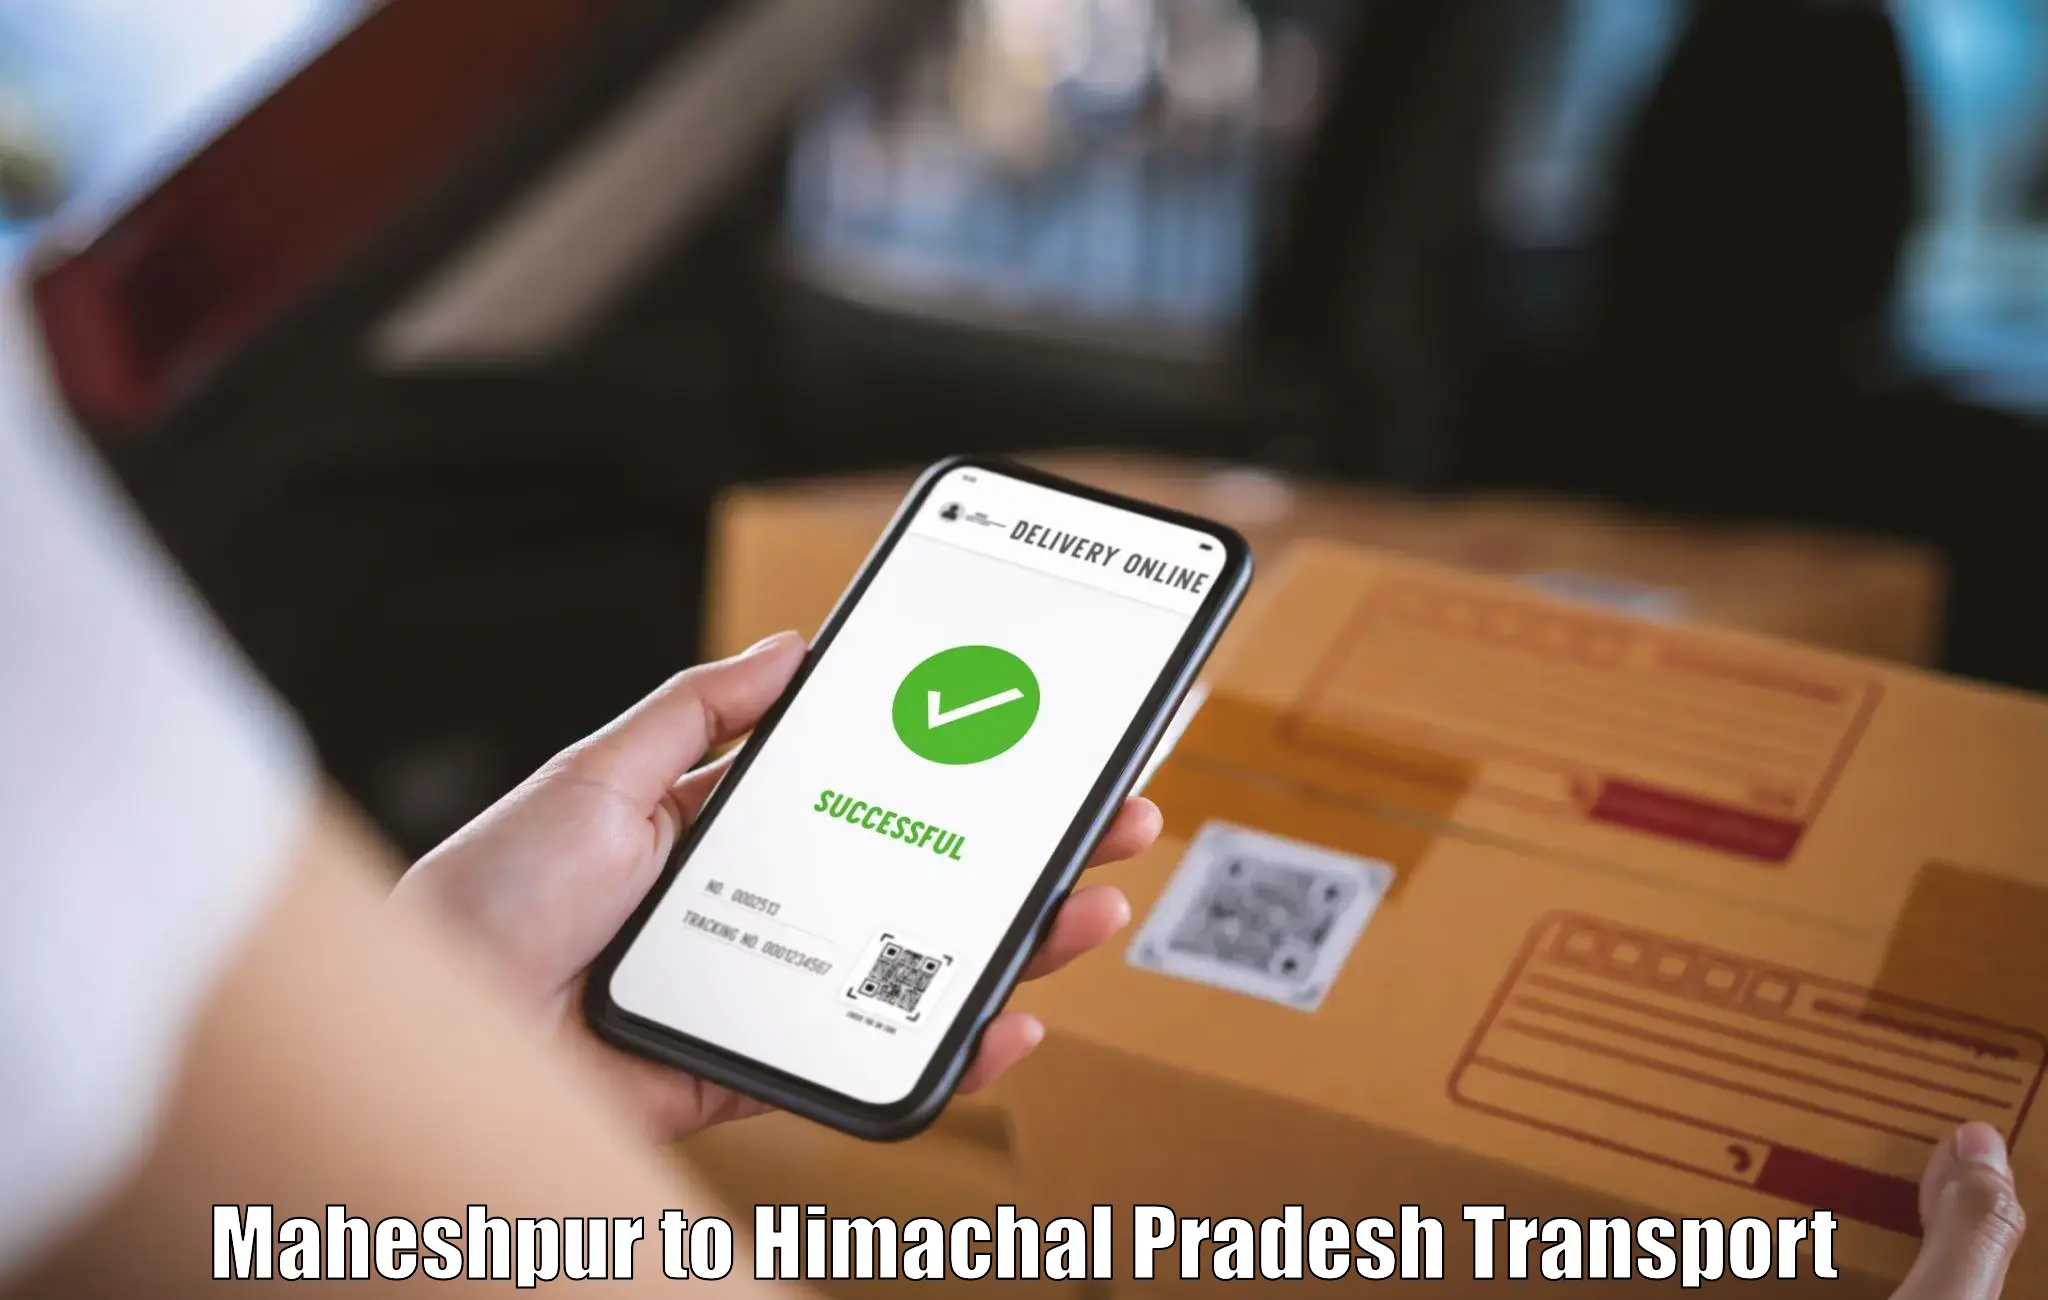 Transport in sharing Maheshpur to Jukhala